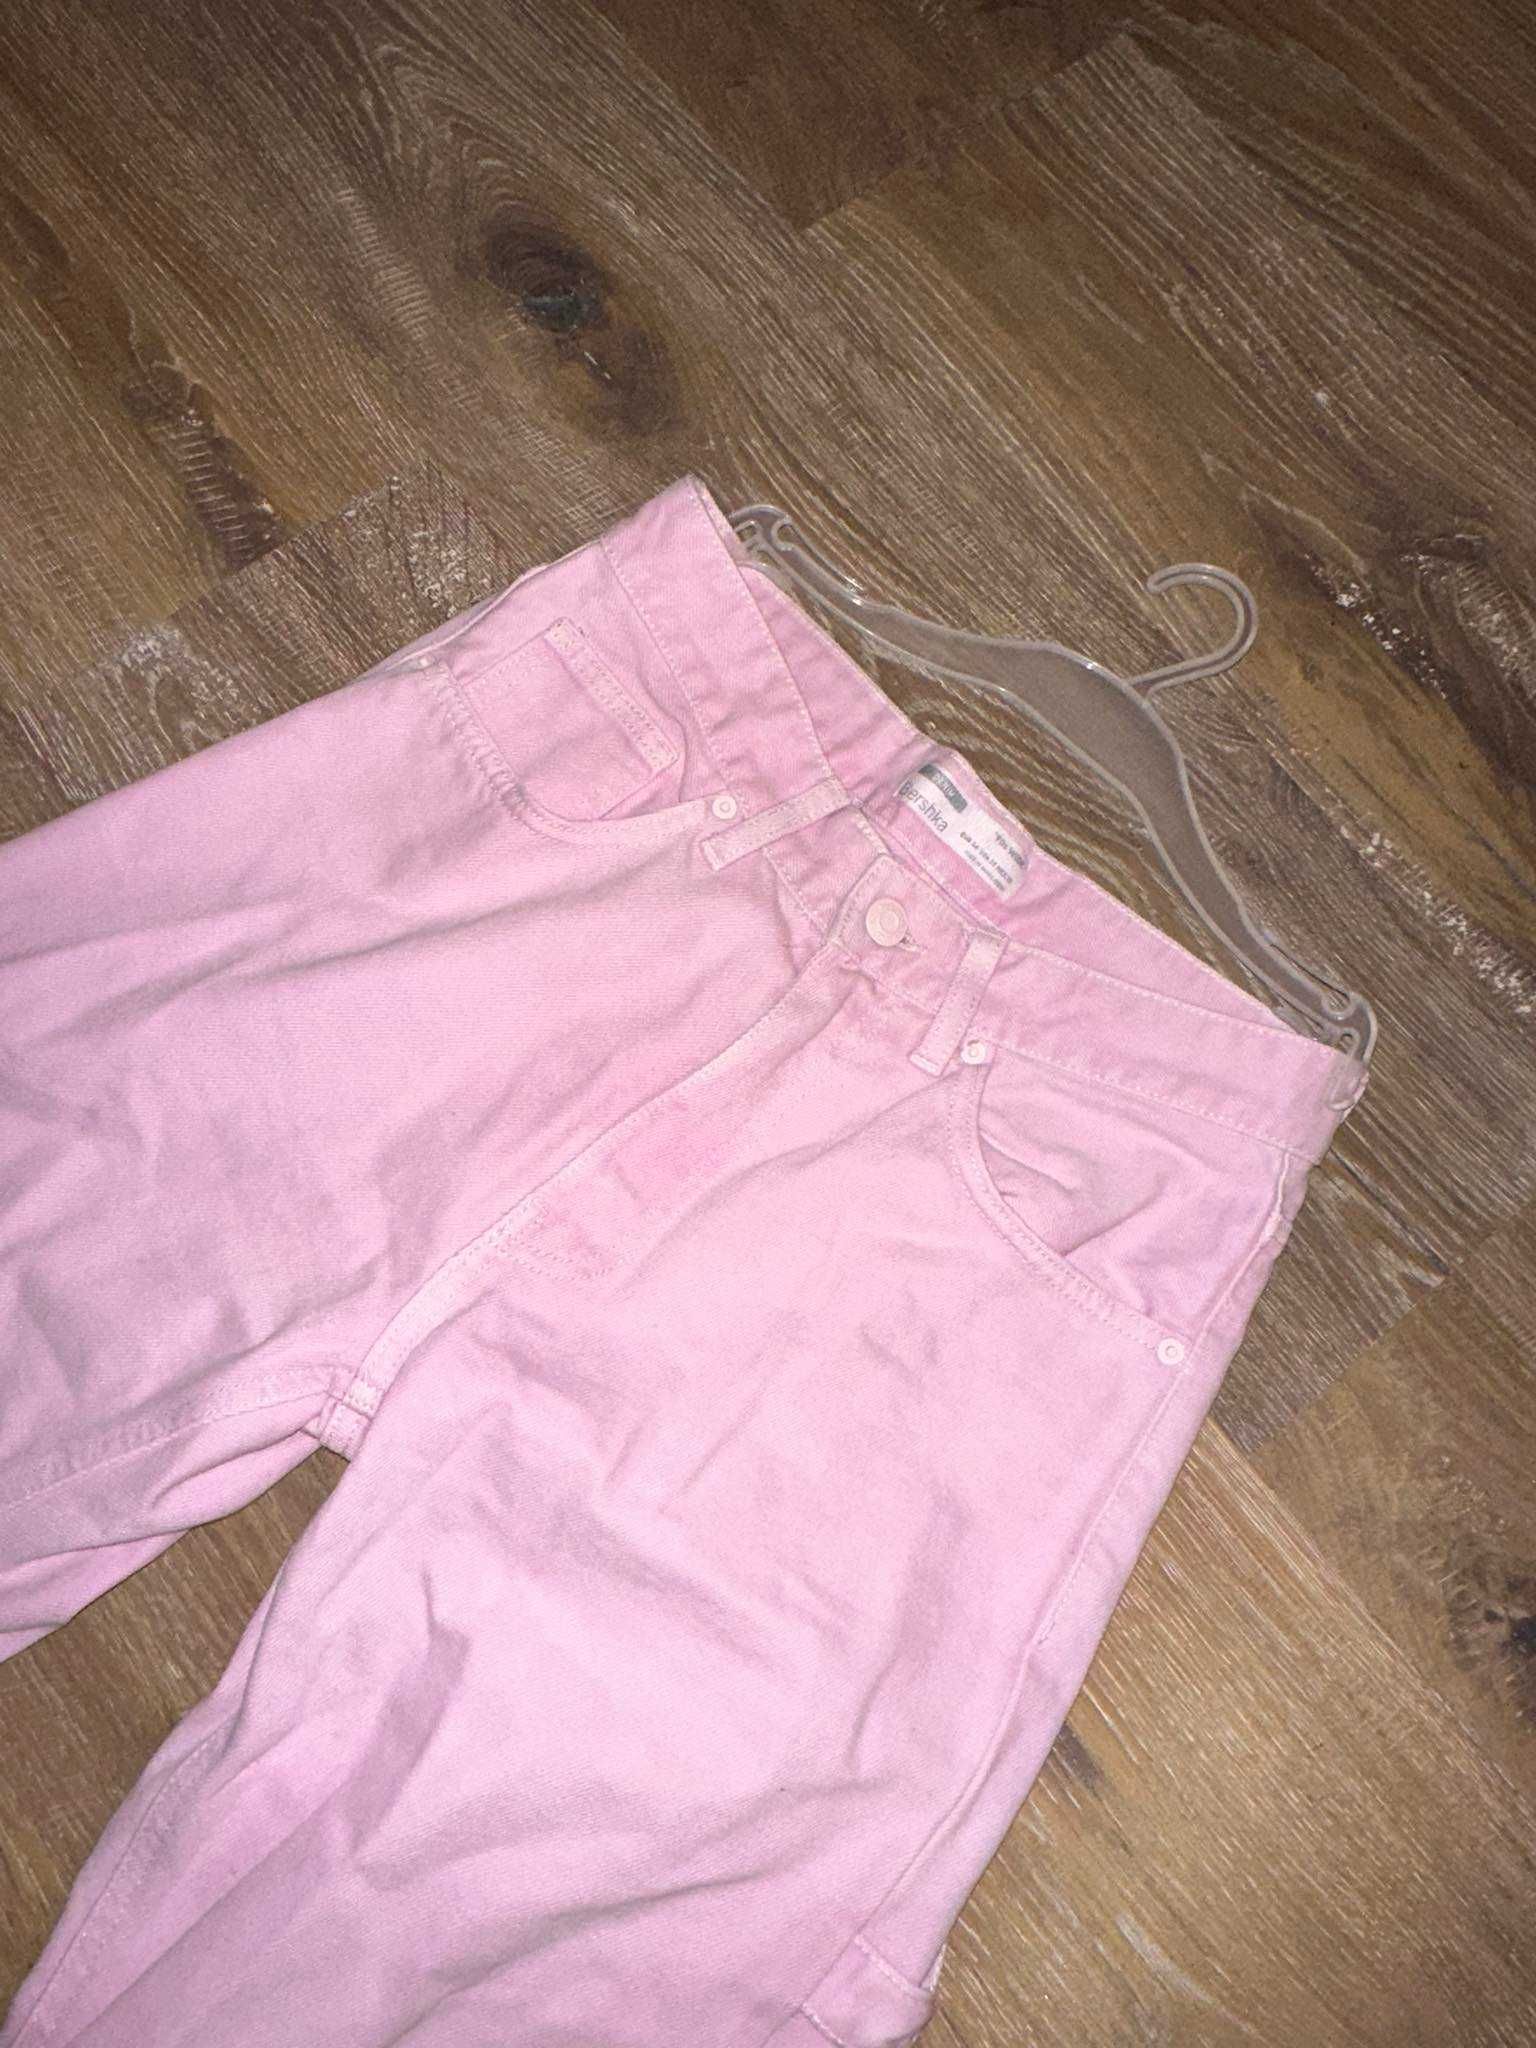 Jeansy różowe z szerokimi nogawkami Bershka XS